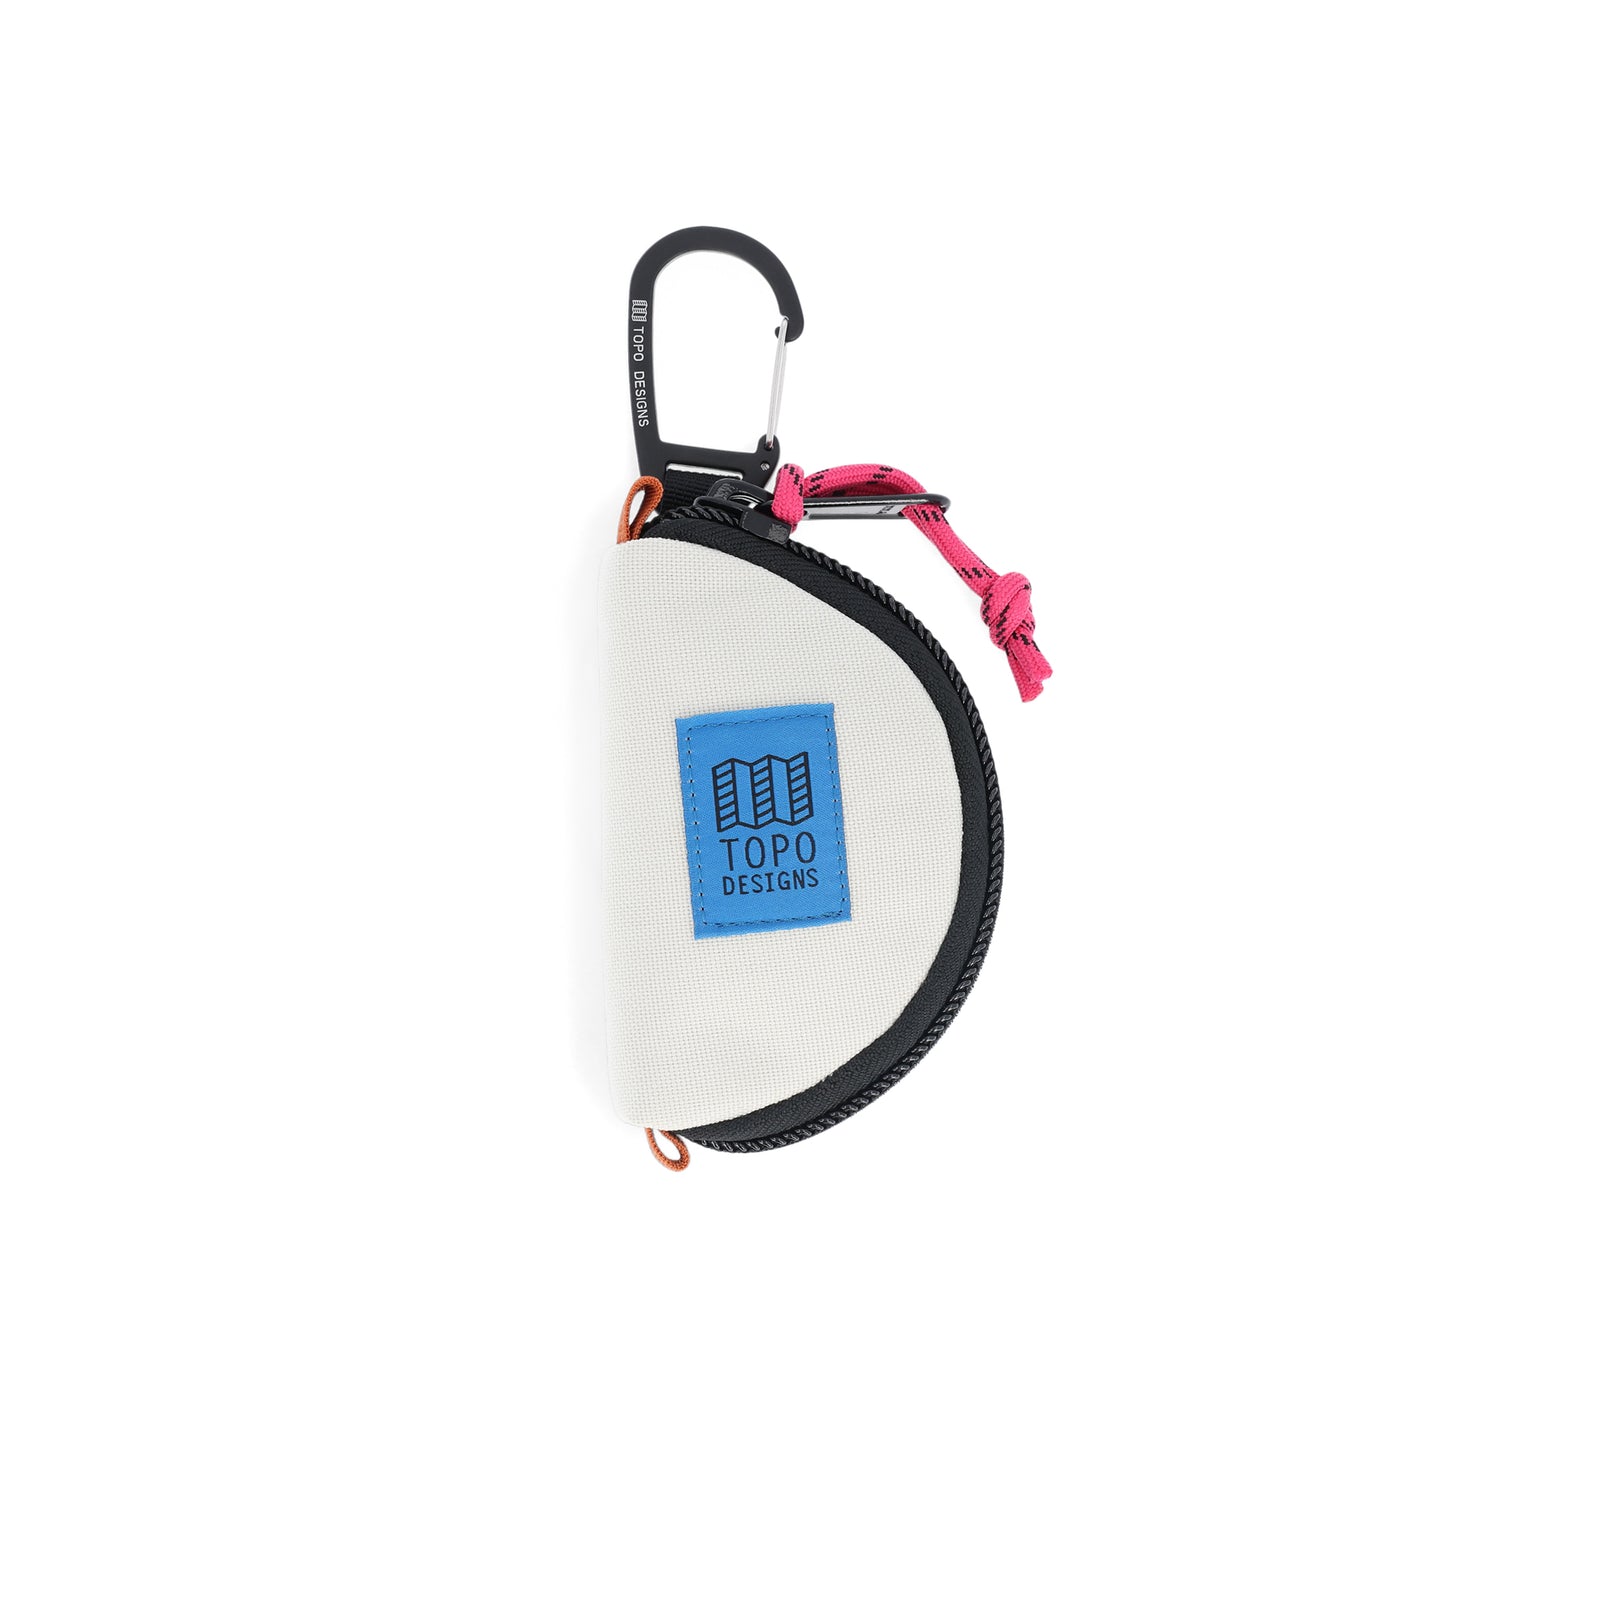 Topo Designs Taco Bag carabiner key clip keychain bag in "Bone White" nylon.